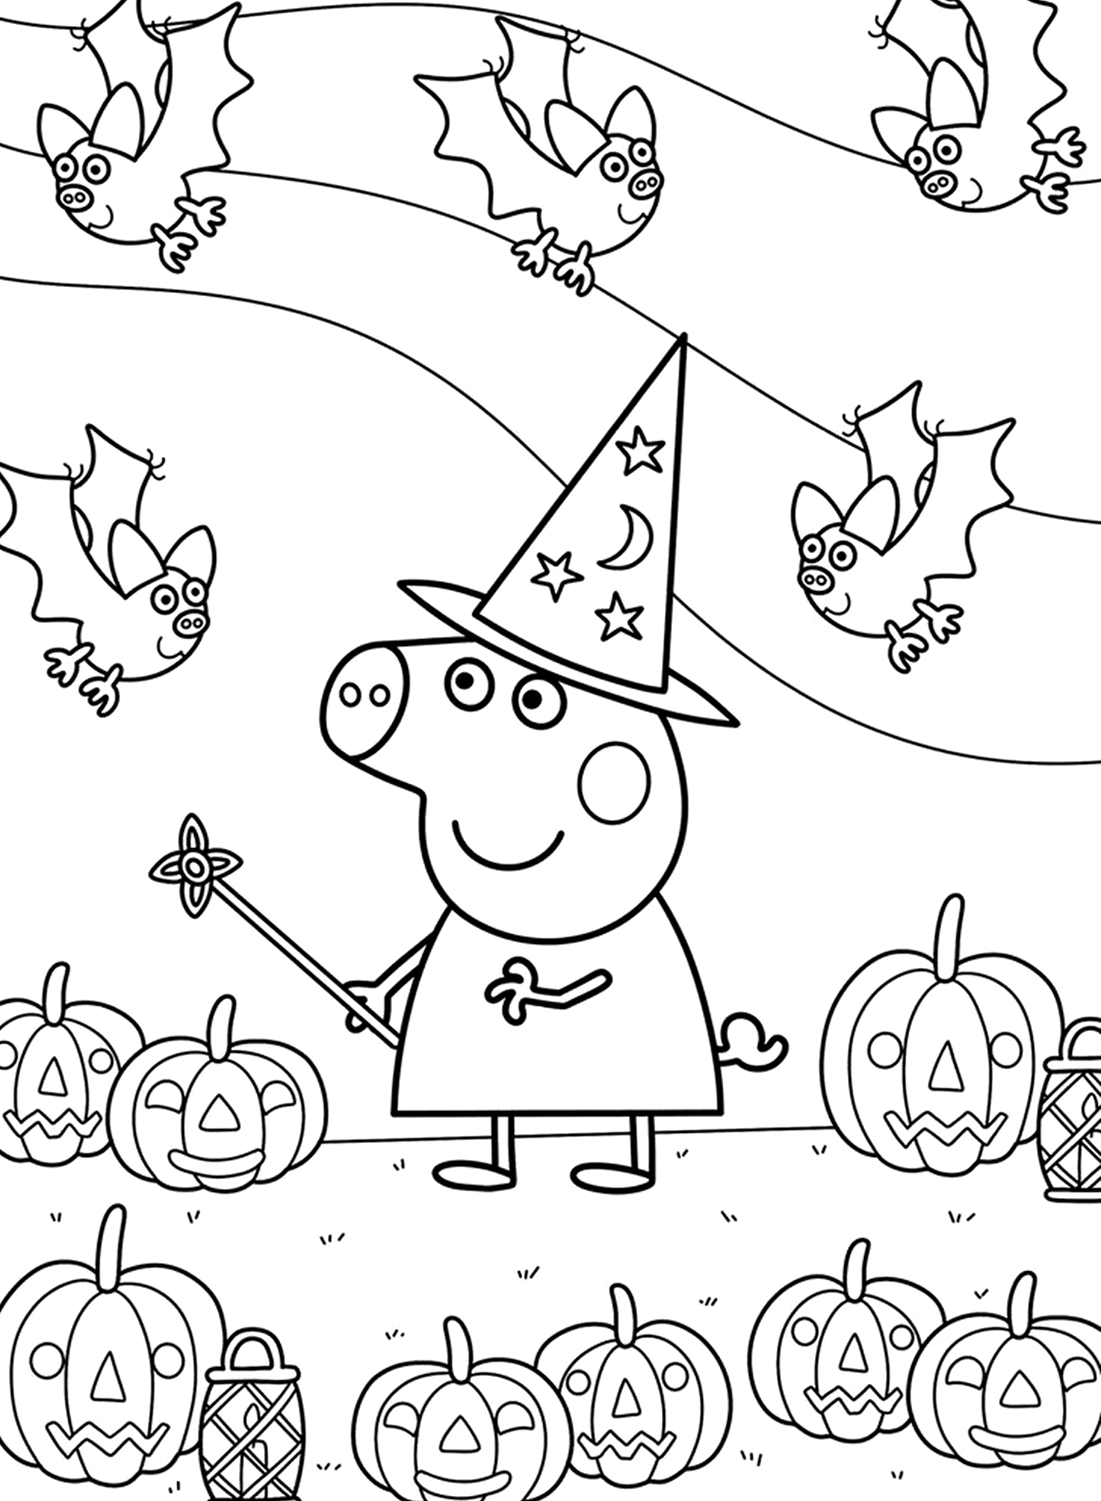 Disegni da colorare di Peppa Pig di Halloween